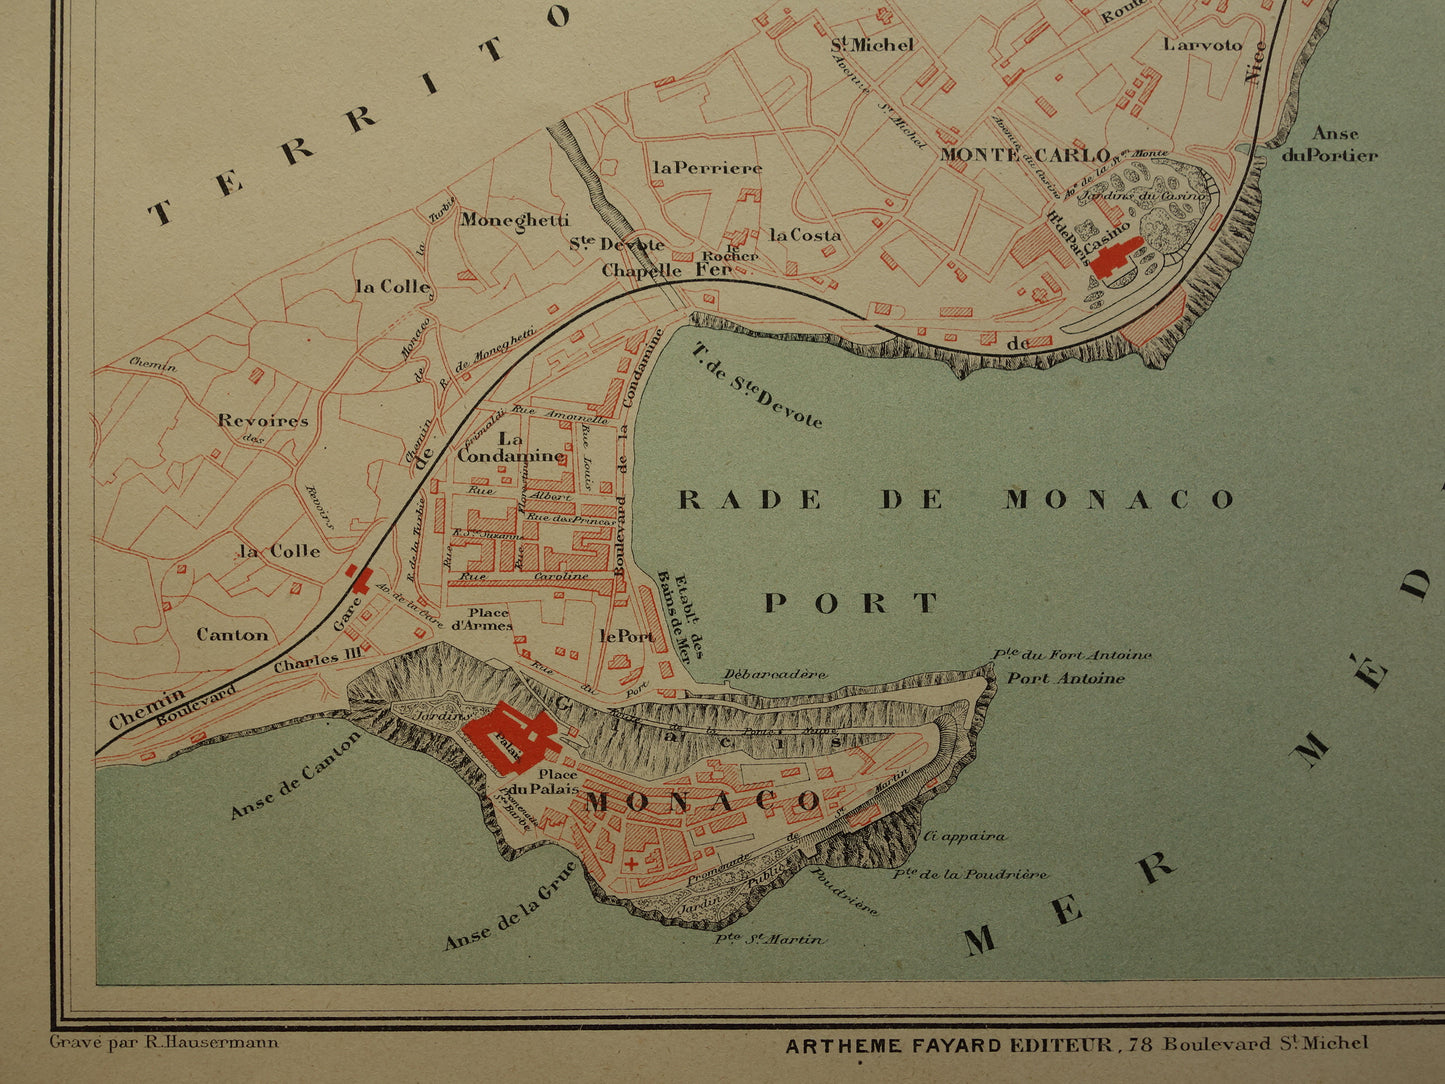 MONACO Oude kaart van Monaco uit 1879 originele antieke Franse plattegrond historische kaarten Monte Carlo